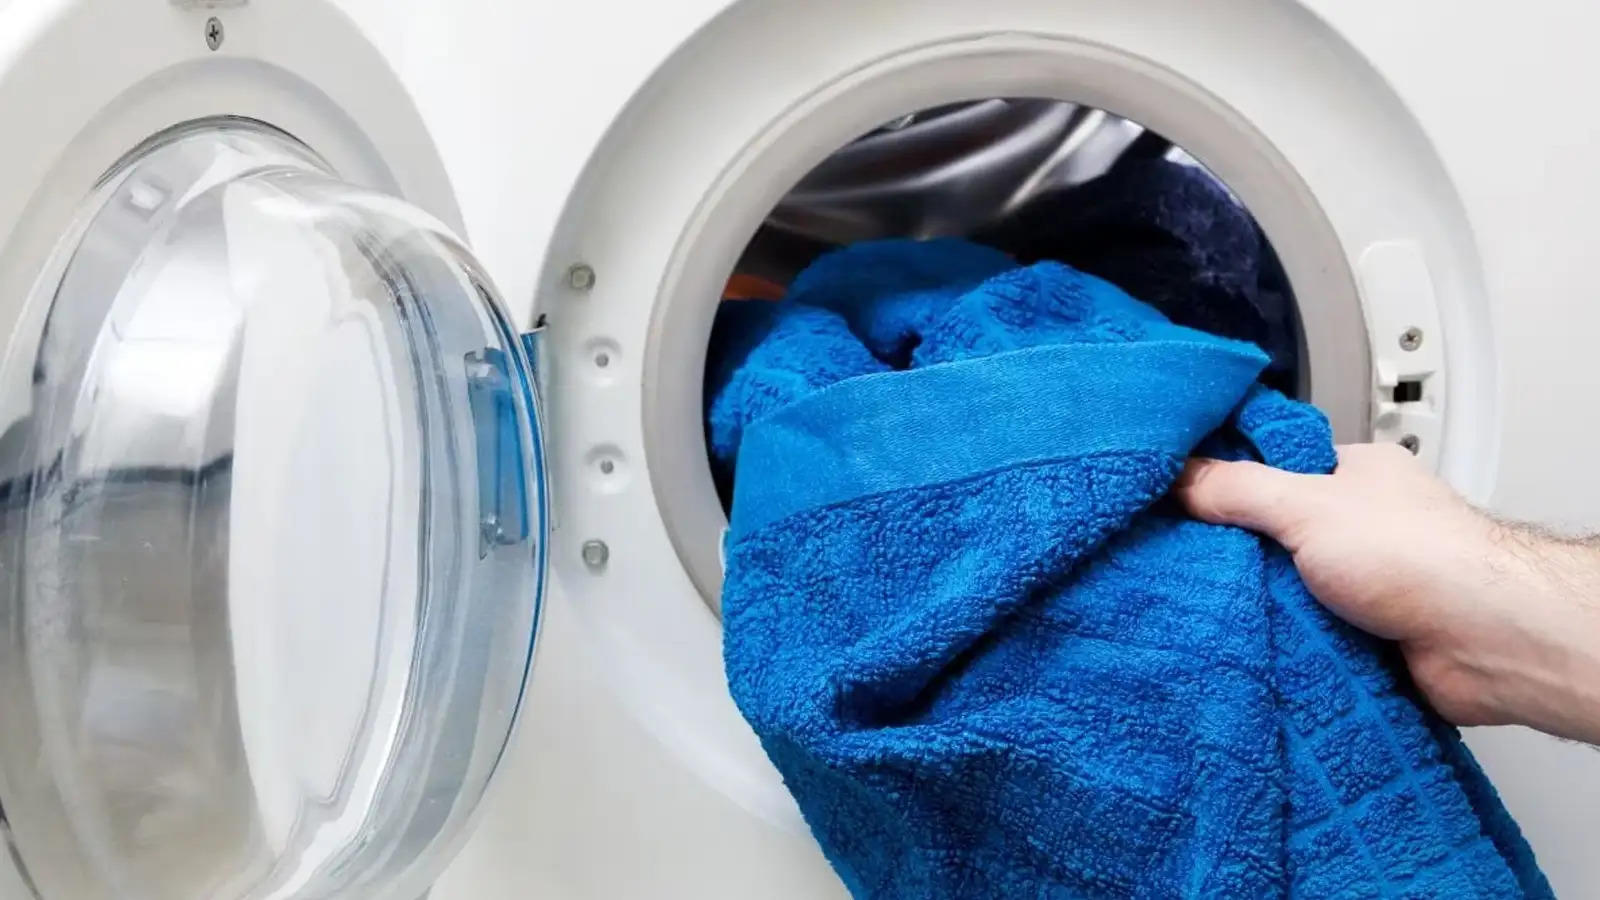 अब आराम से धोएं वाशिंग मशीन में कपड़े, नहीं आएगा लंबा – चौड़ा बिजली बिल, अपनाएं ये टिप्स 